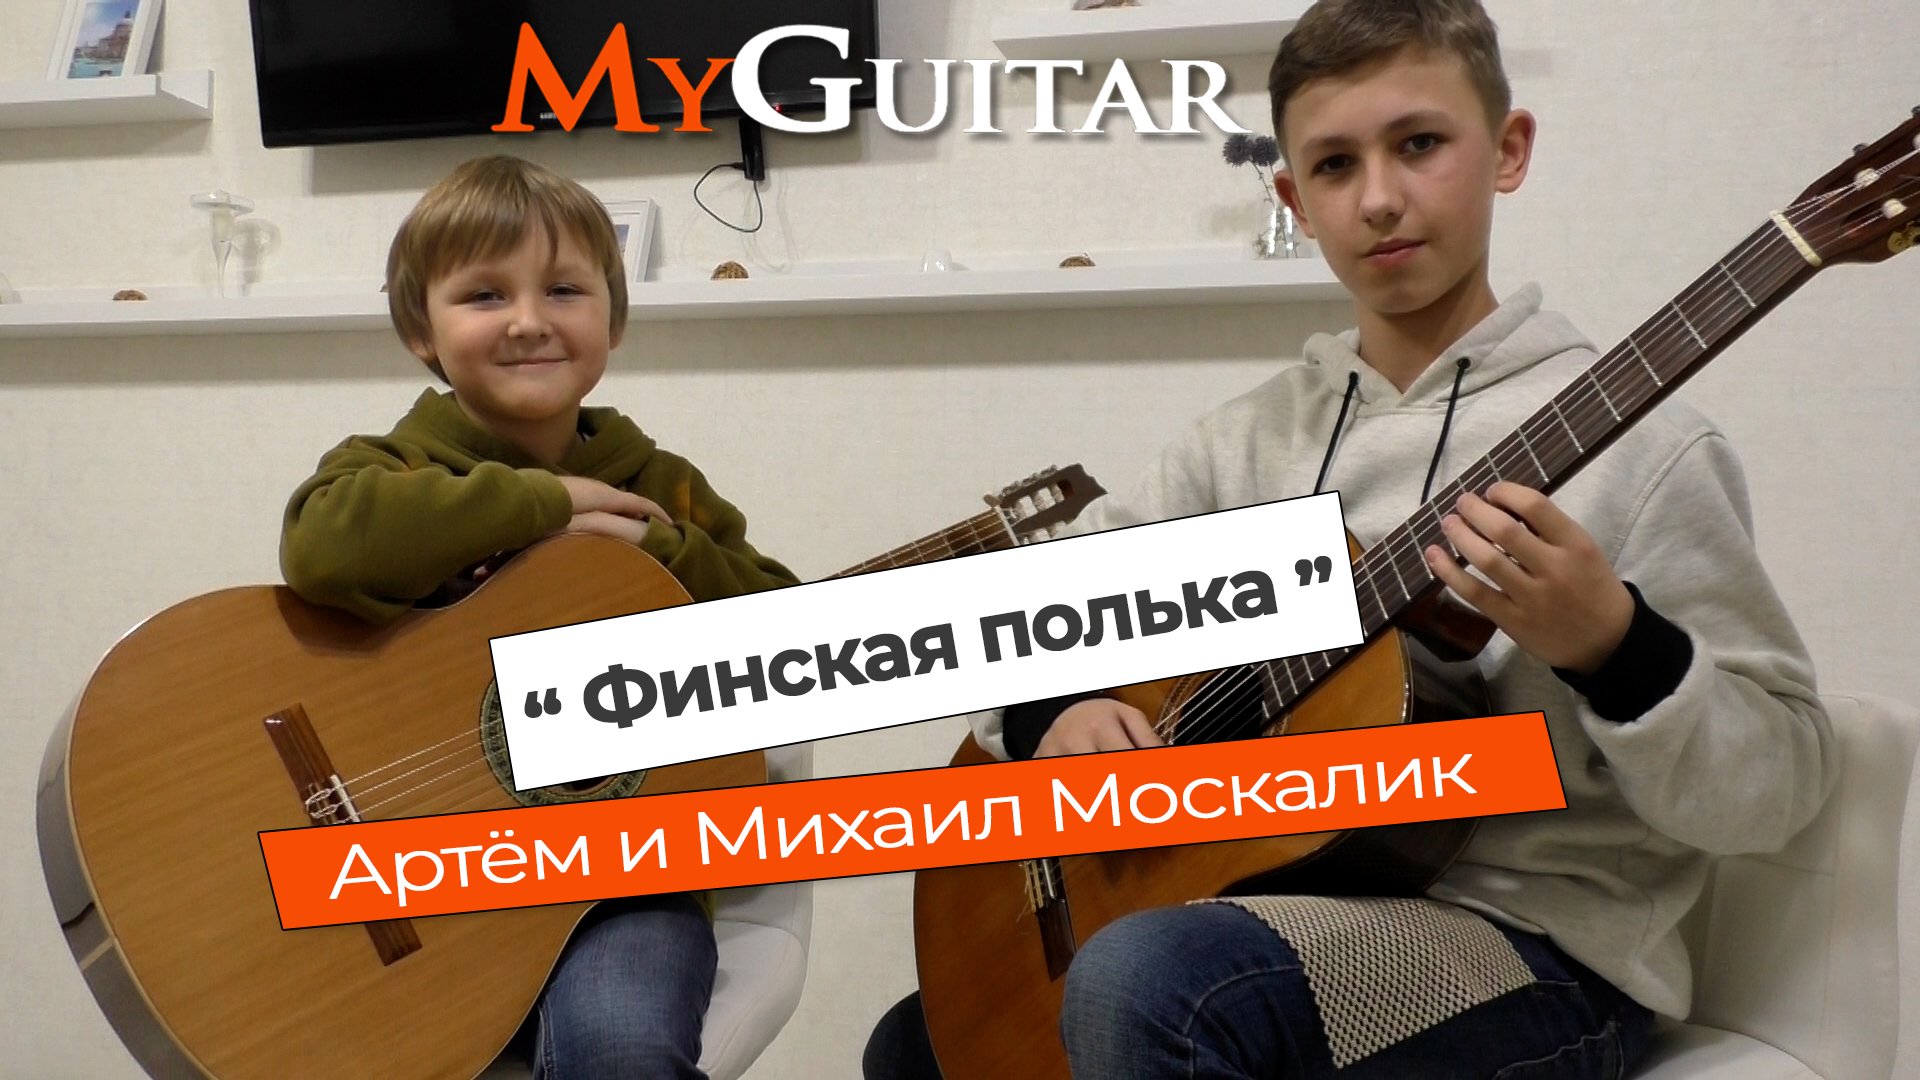 "Финская полька", на гитаре. Исполняют Артём и Михаил Москалик. (8 и 13 лет).